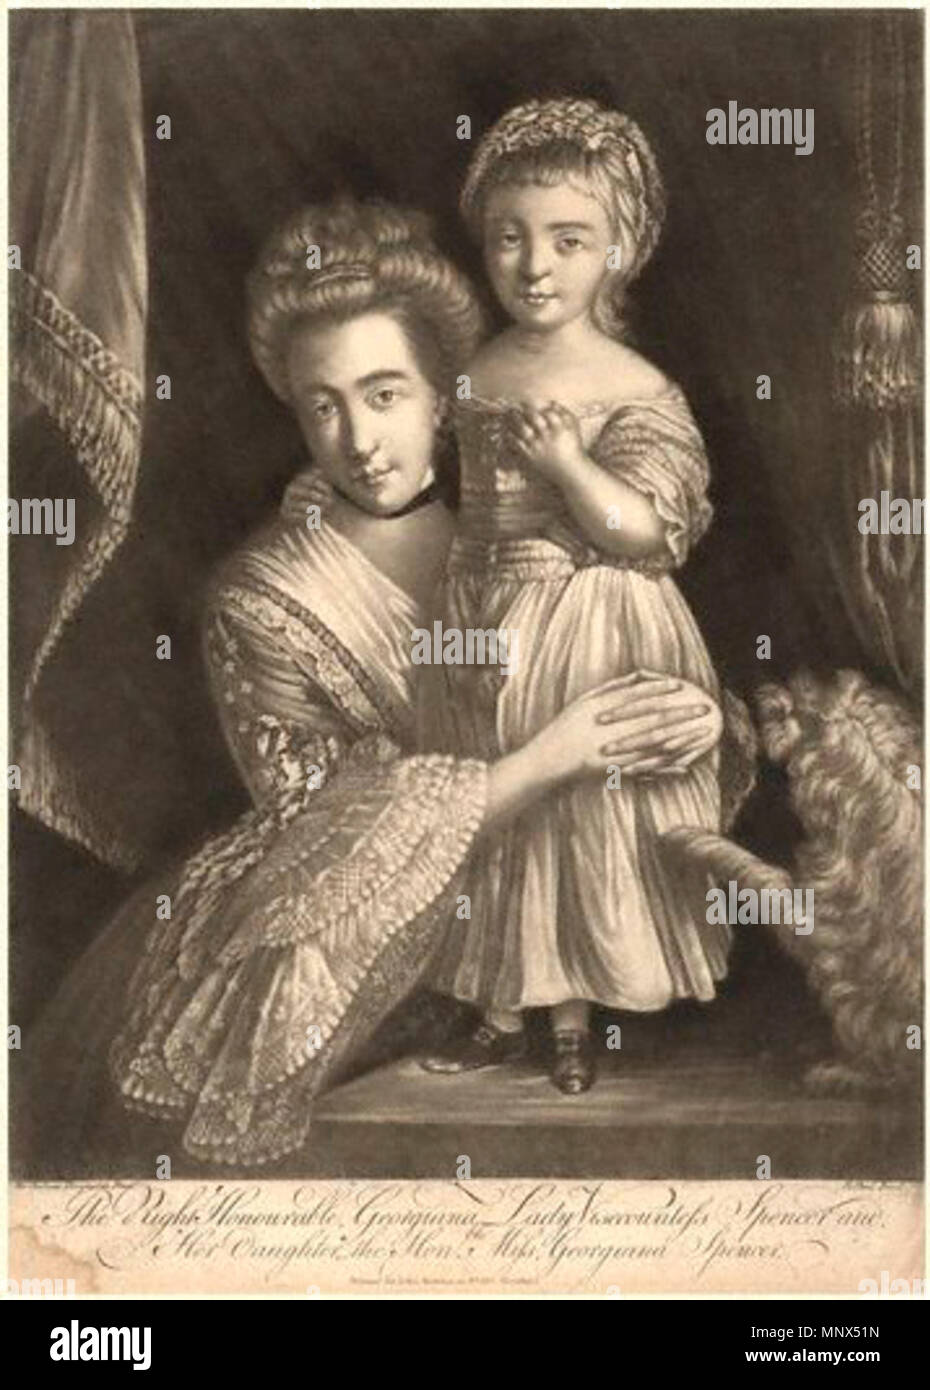 Par J.S. après ; Paul ; Sir Joshua Reynolds,print,publié 1771 ou après .  Anglais : Margaret Georgiana, comtesse Spencer avec sa fille Georgiana,  selon la source. La légende dit qu'il s'agit de